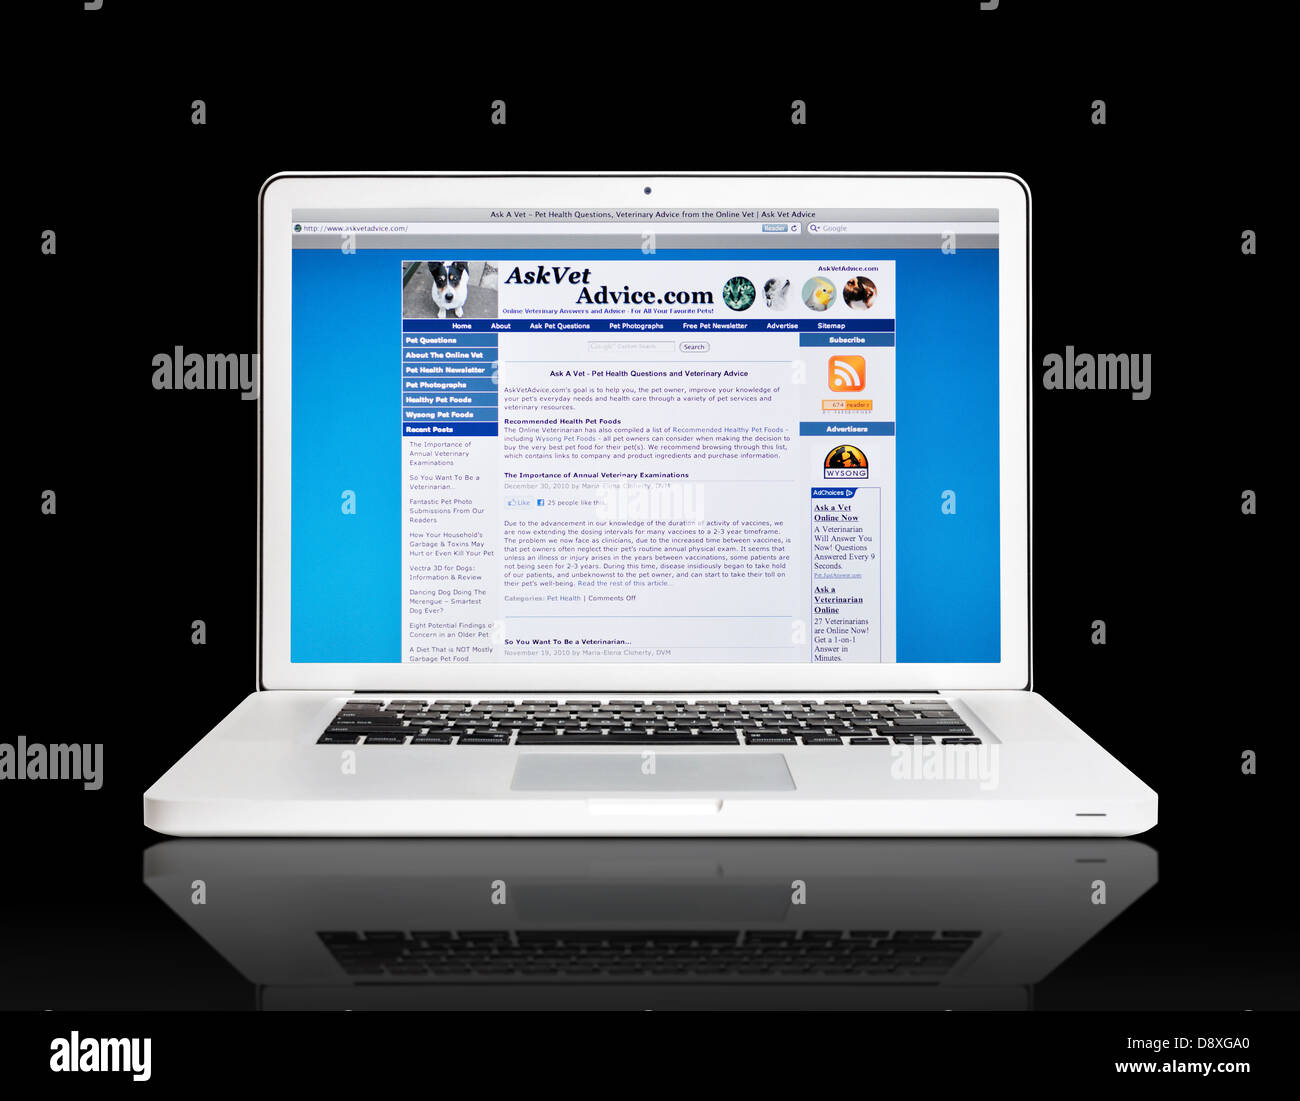 Fragen Sie Tierarzt Beratung Website auf Laptop-Bildschirm - Haustier-Gesundheit-Fragen Stockfoto